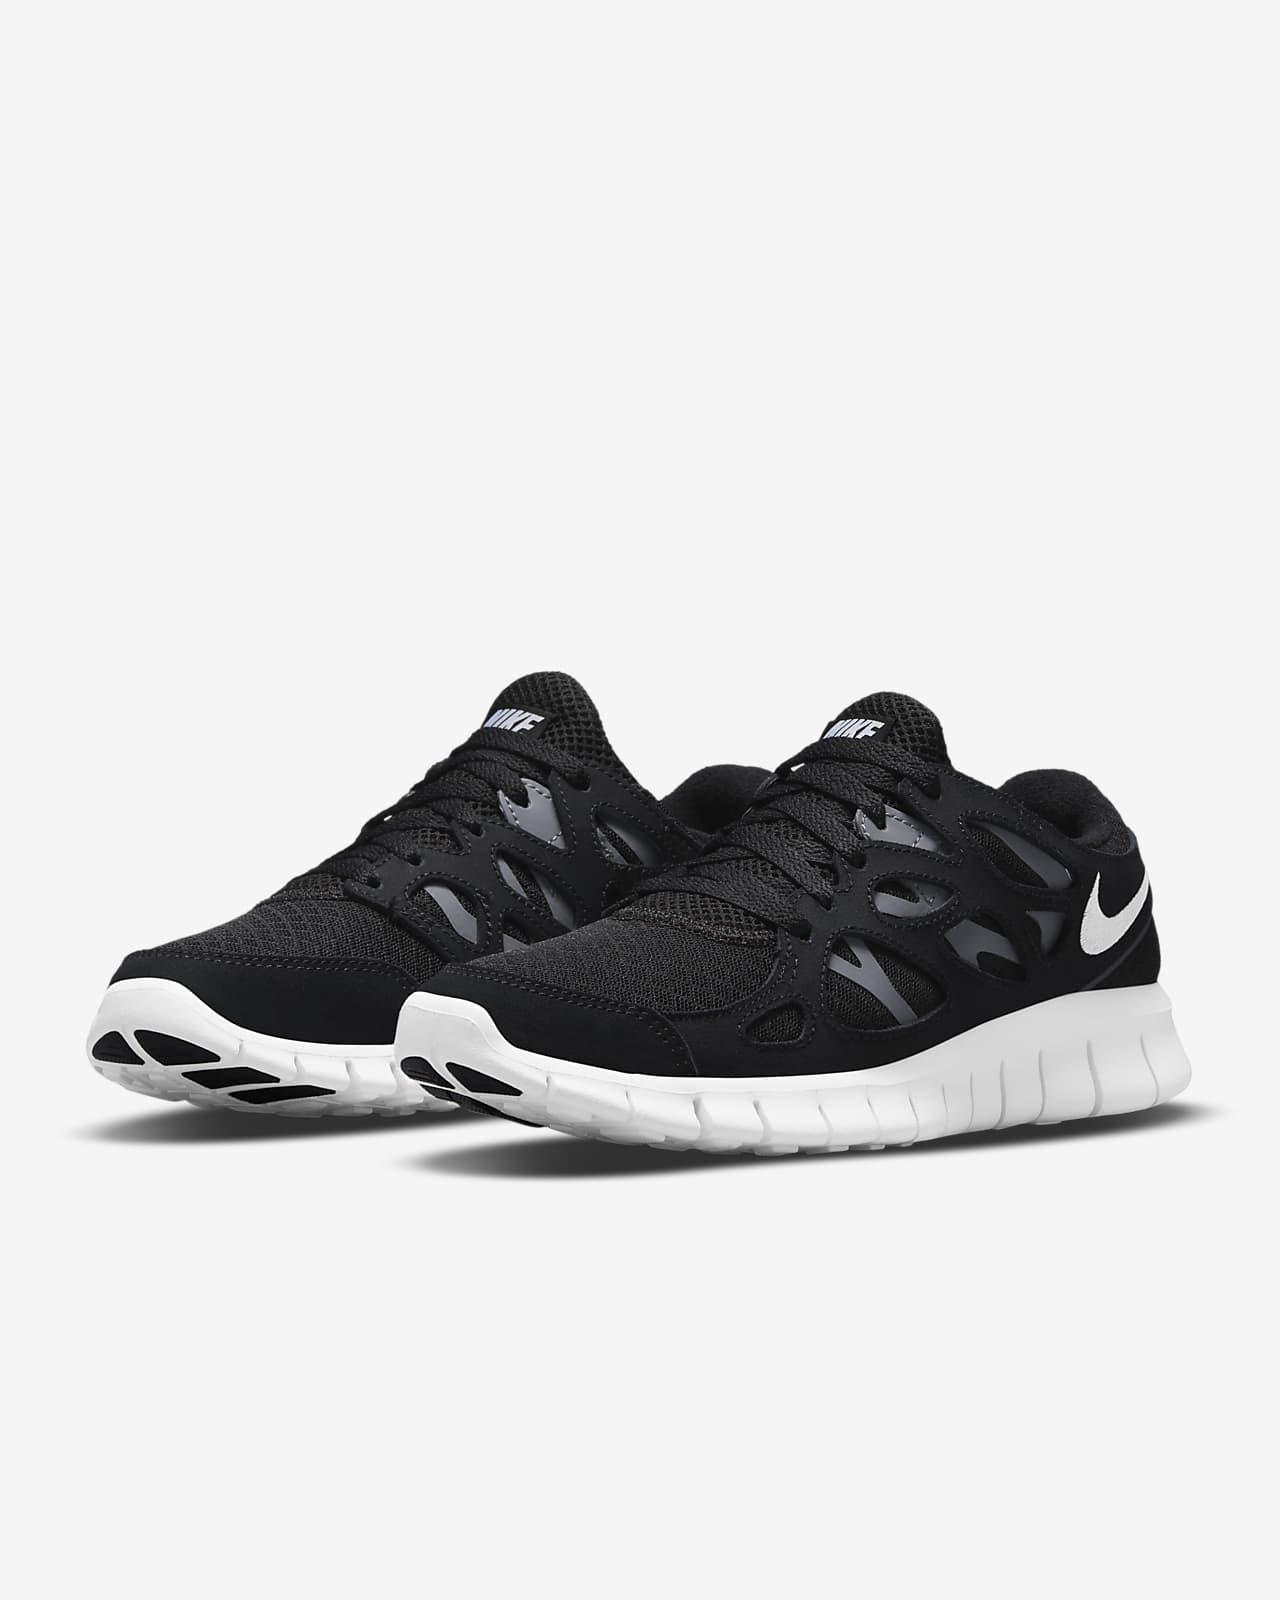 Nike Women's Free Run 2 Shoes, Black